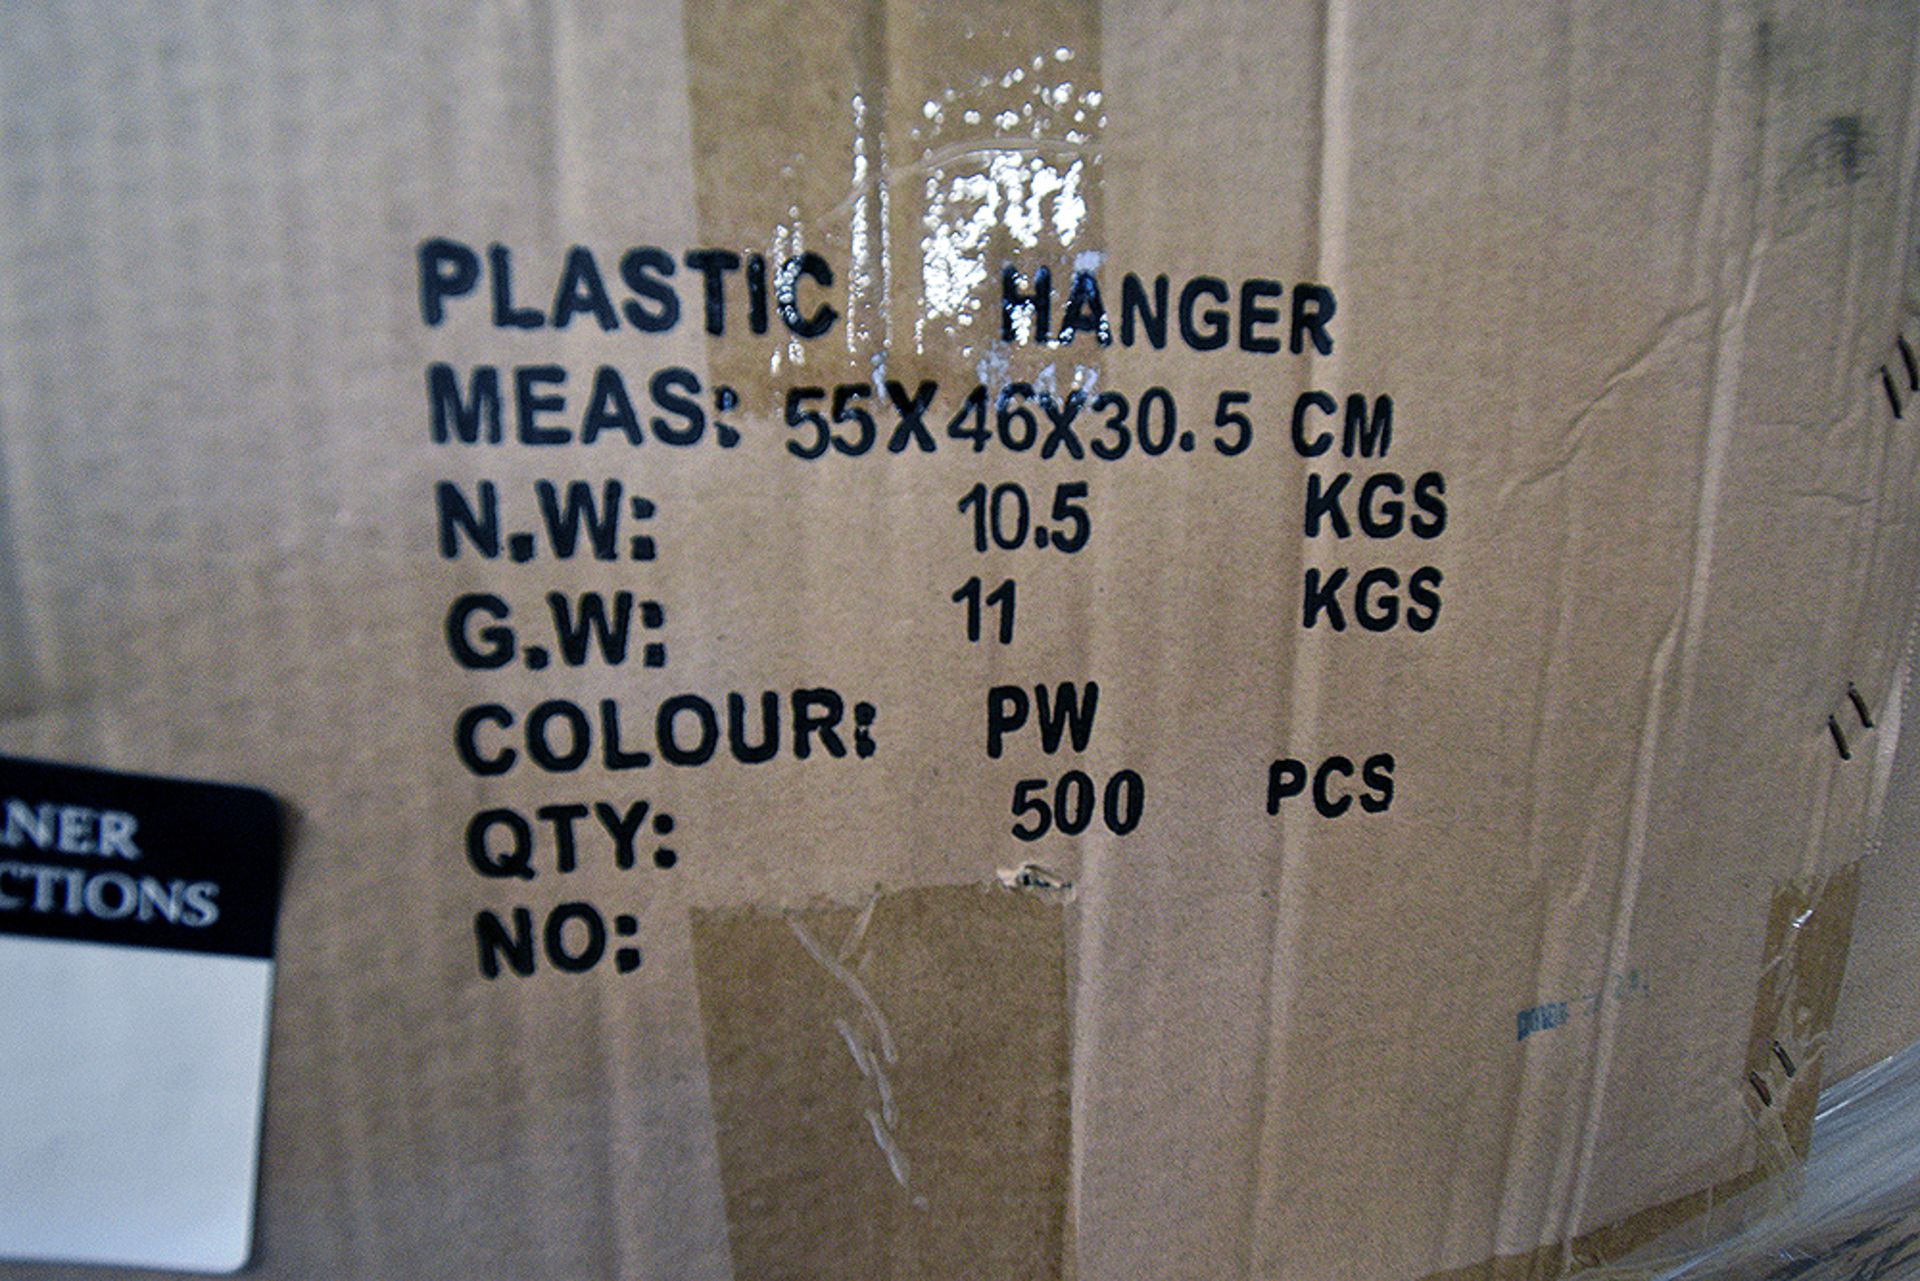 Cases of 500 White Plastic Hangers 55cmx46cmx30.5cm - Image 2 of 3